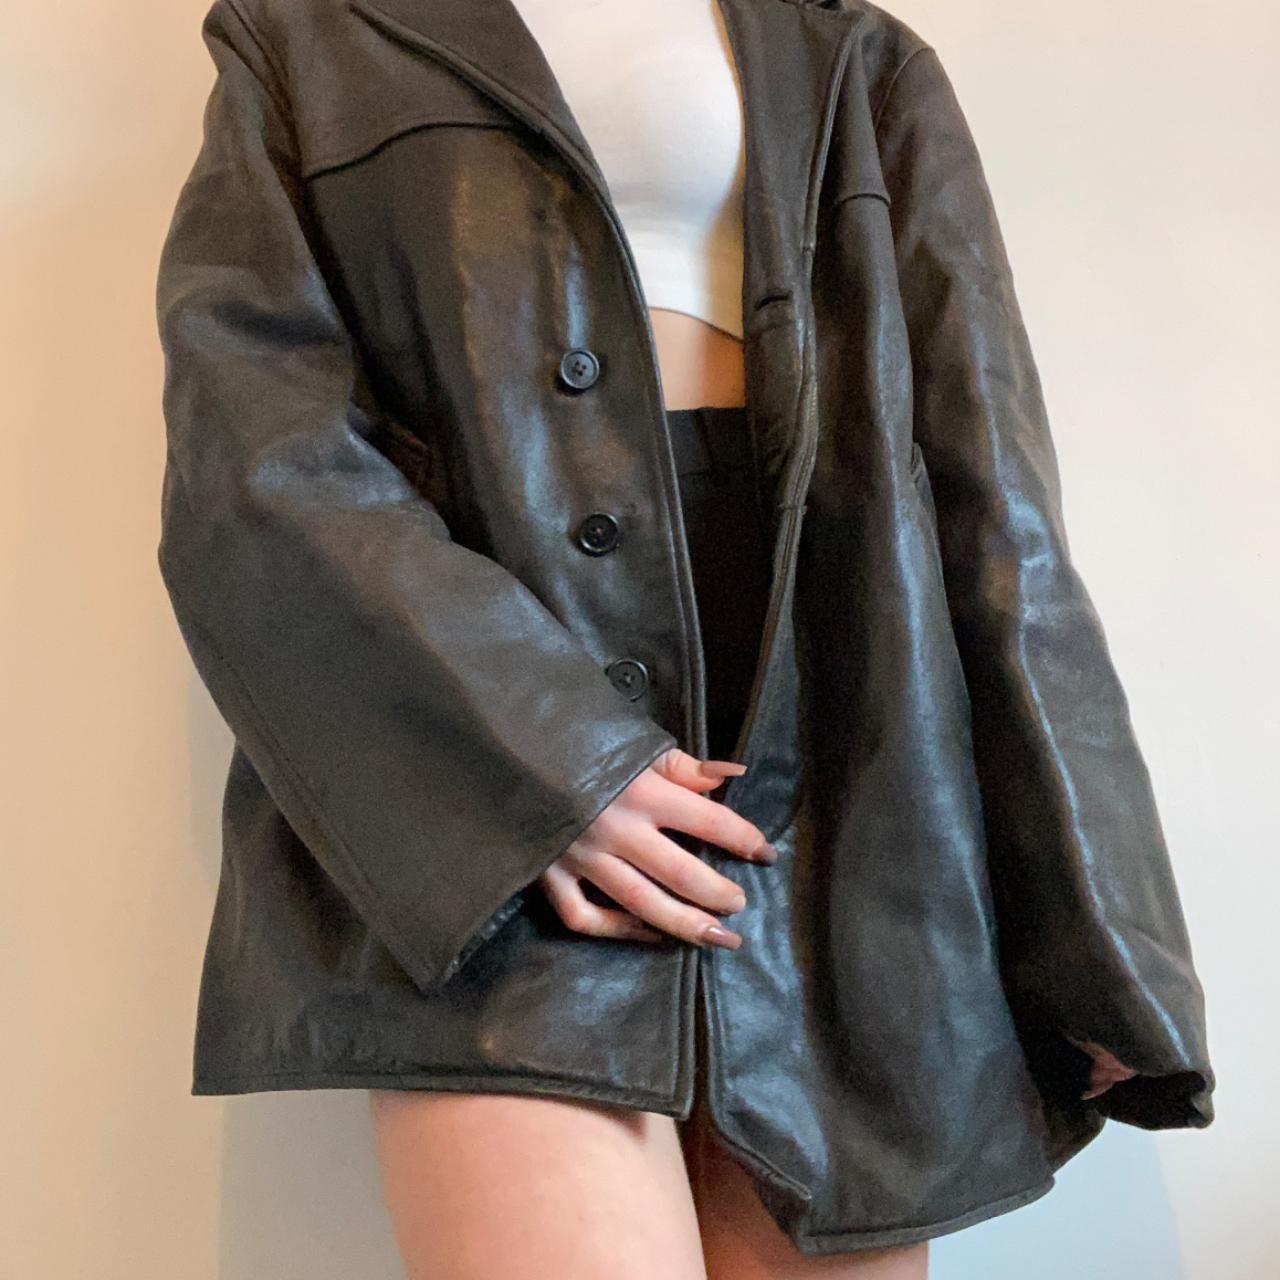 Vintage black oversized leather jacket/coat - Depop